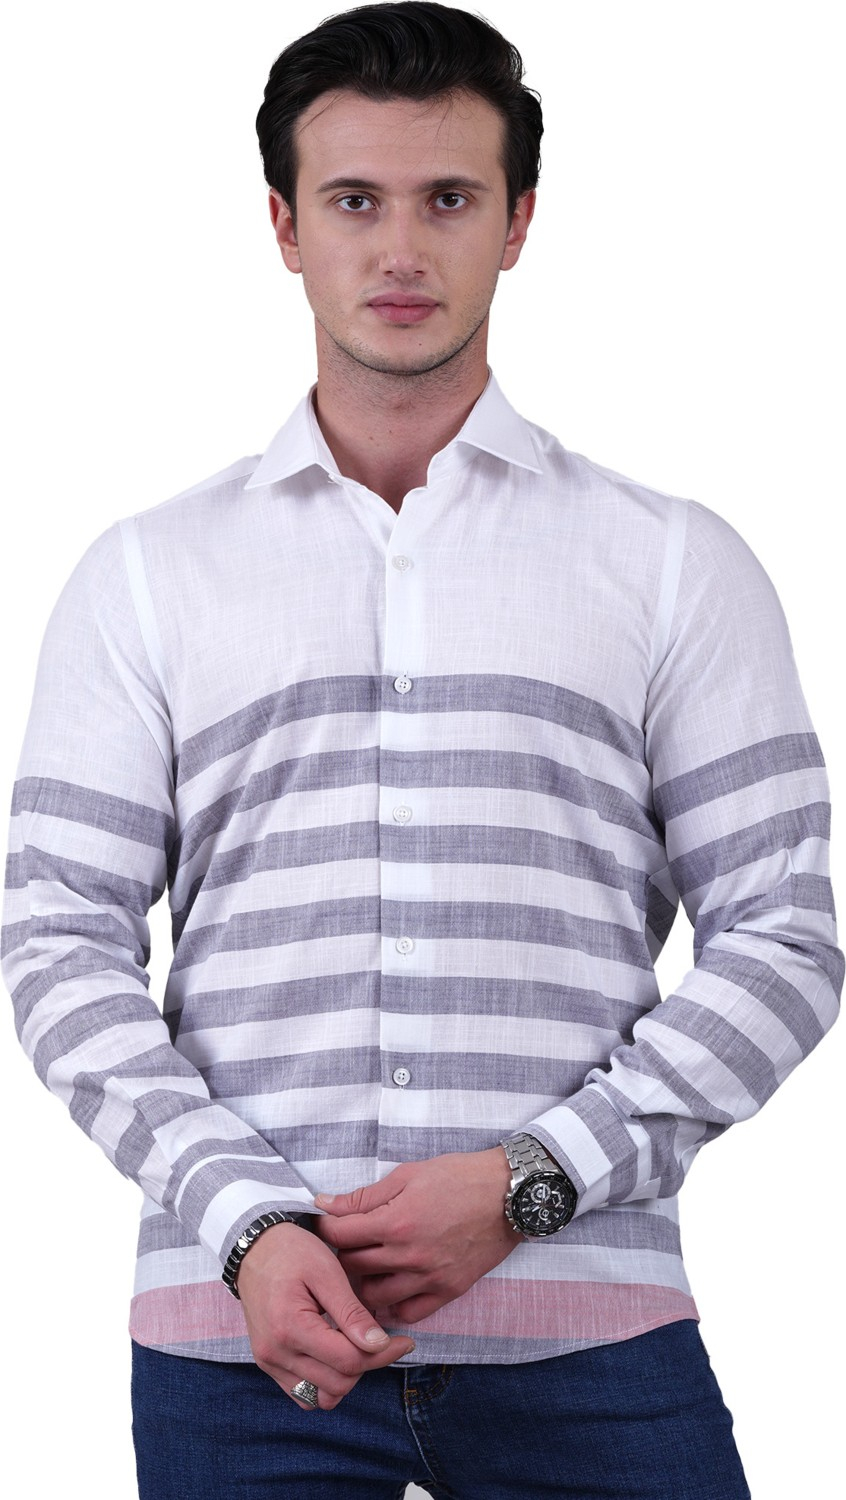 Эксклюзивная рубашка Exve белая с серыми полосками и красными деталями, специального кроя из хлопка и льна для мужчин с утонченной посадкой.